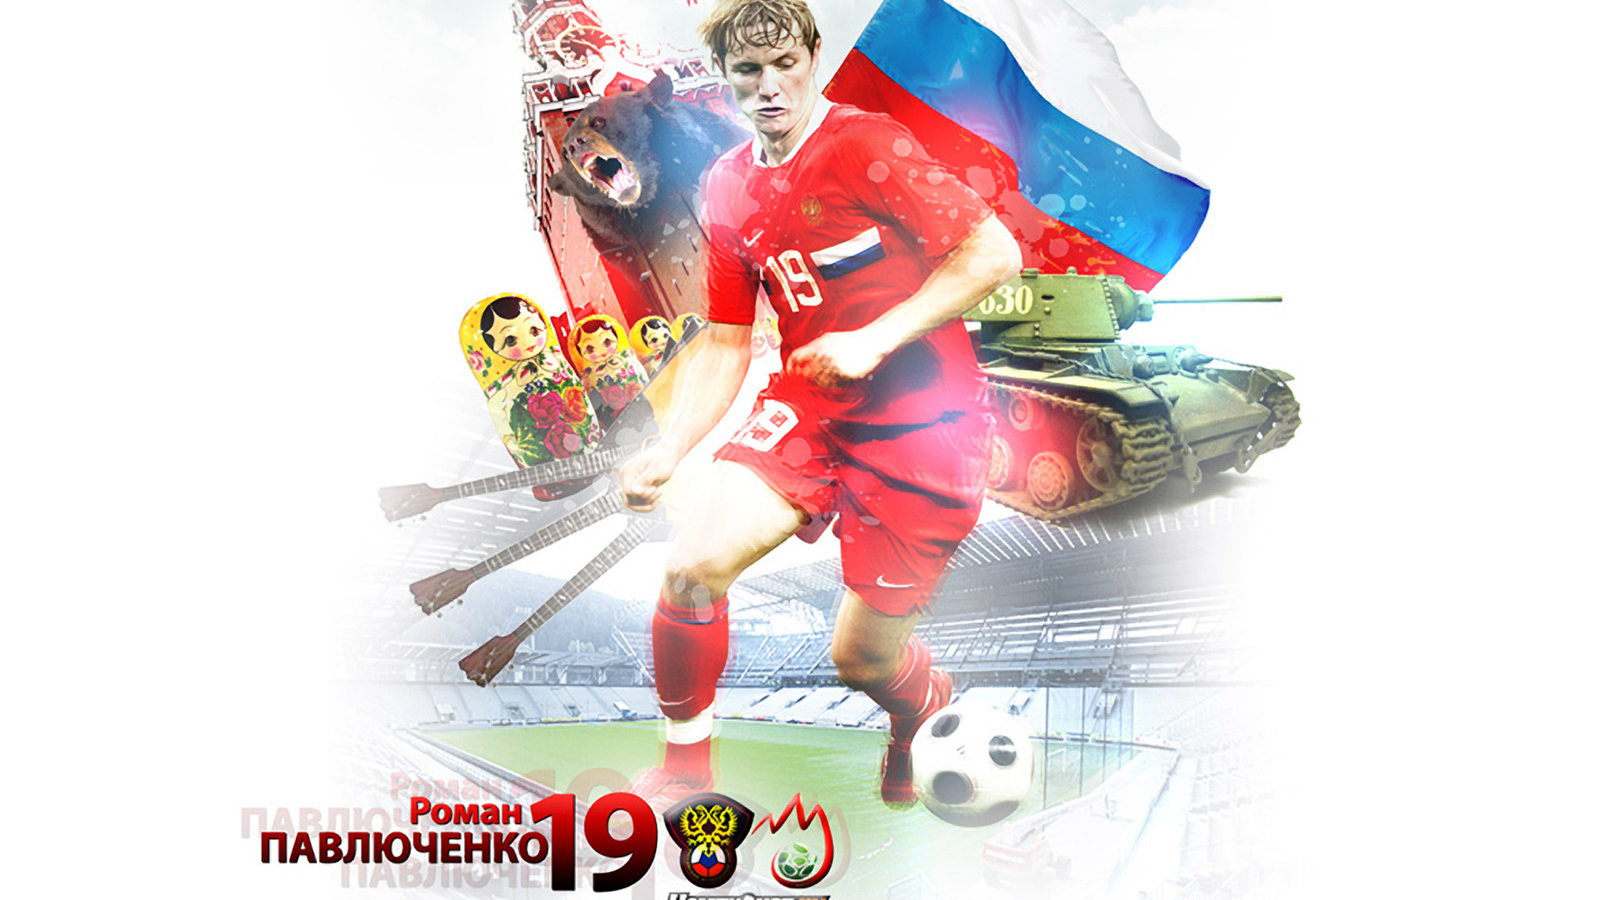 Spartak striker Roman Pavlyuchenko with ball